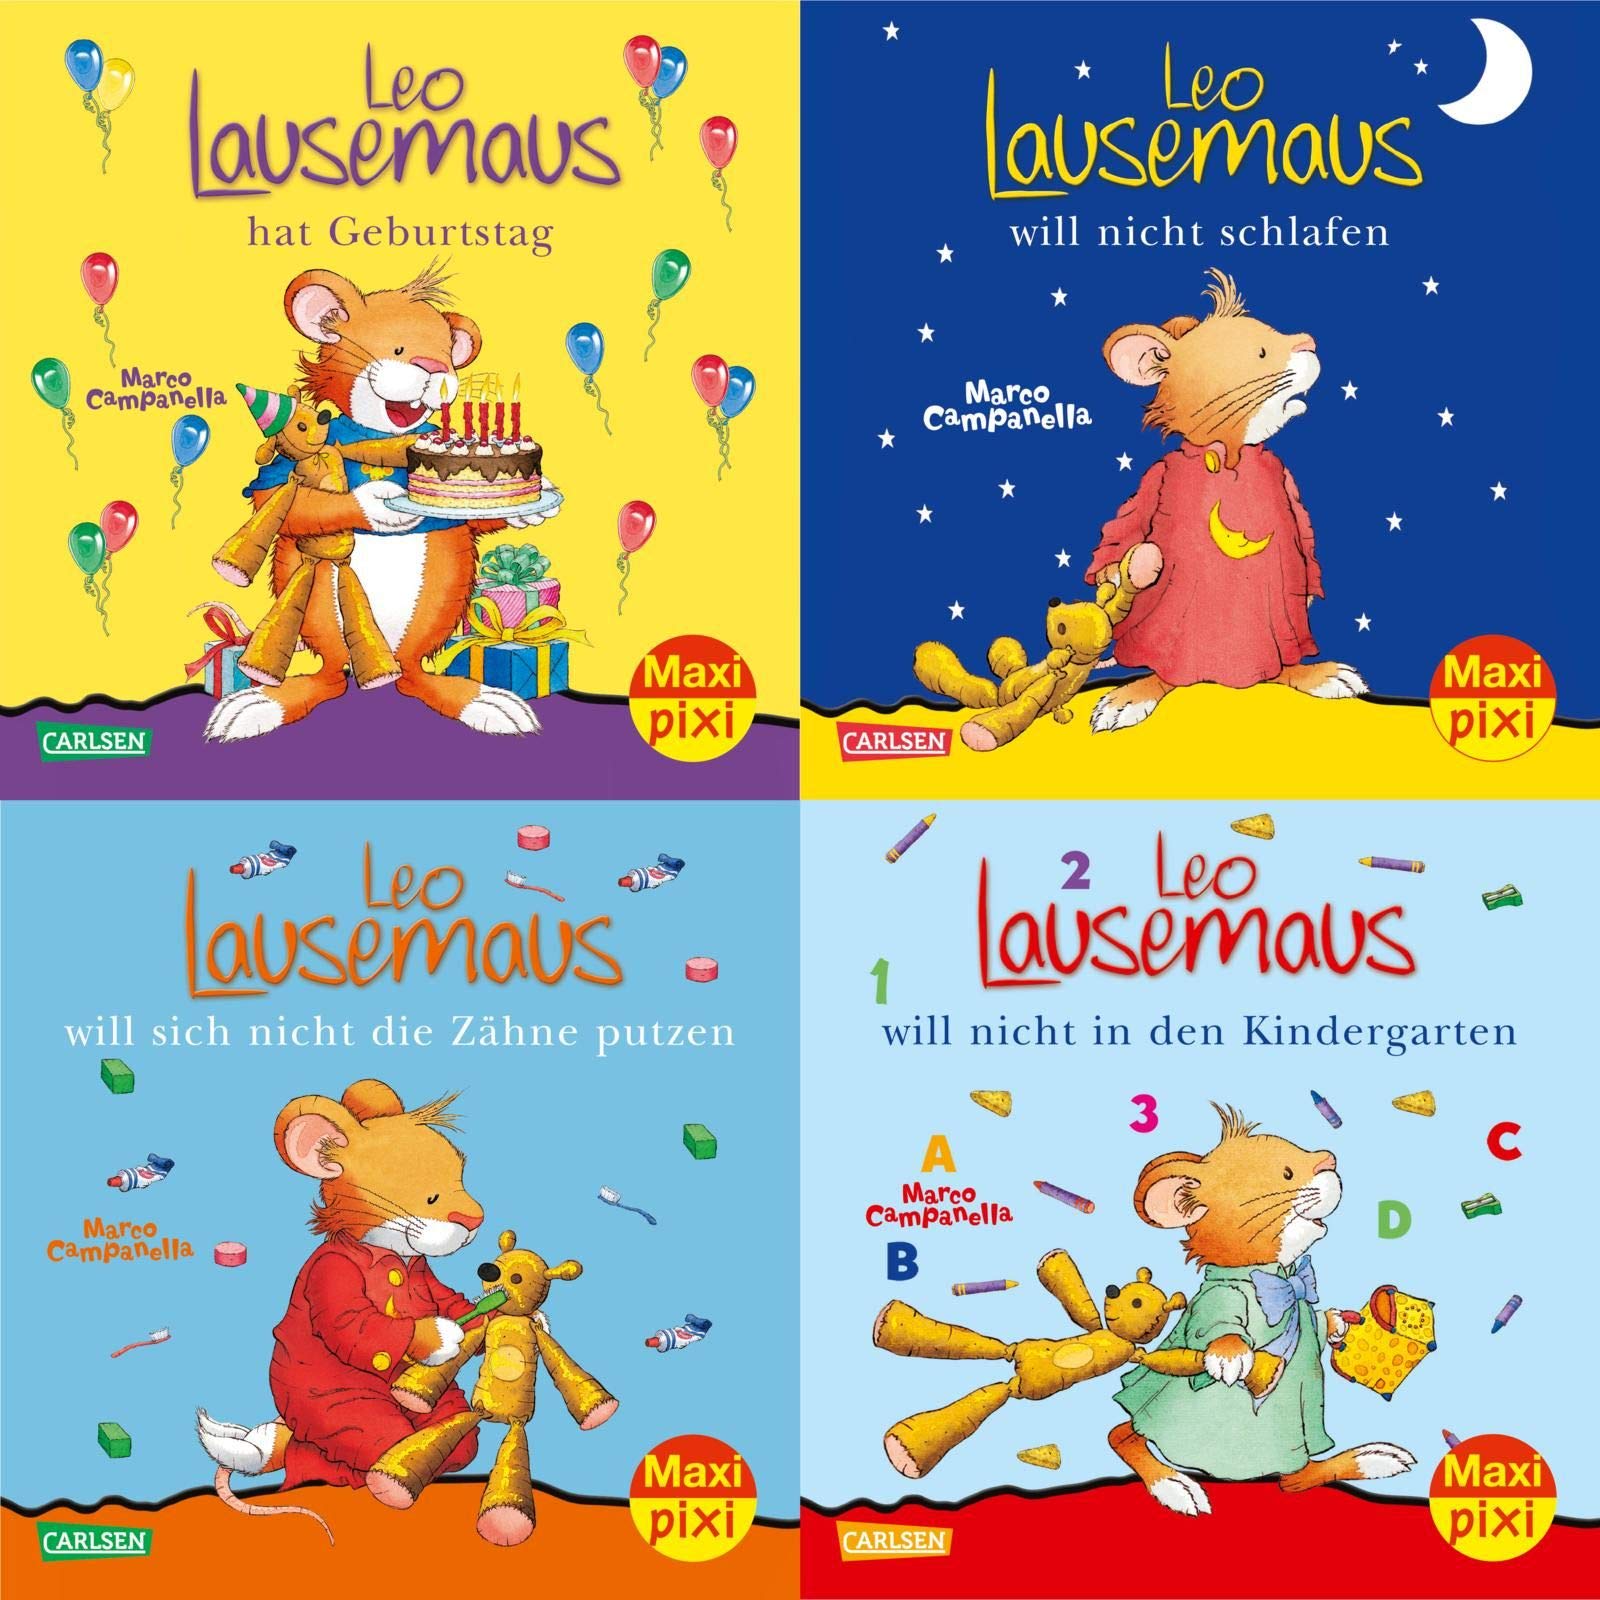 Leo Lausemaus 4 Maxi-Pixi books set